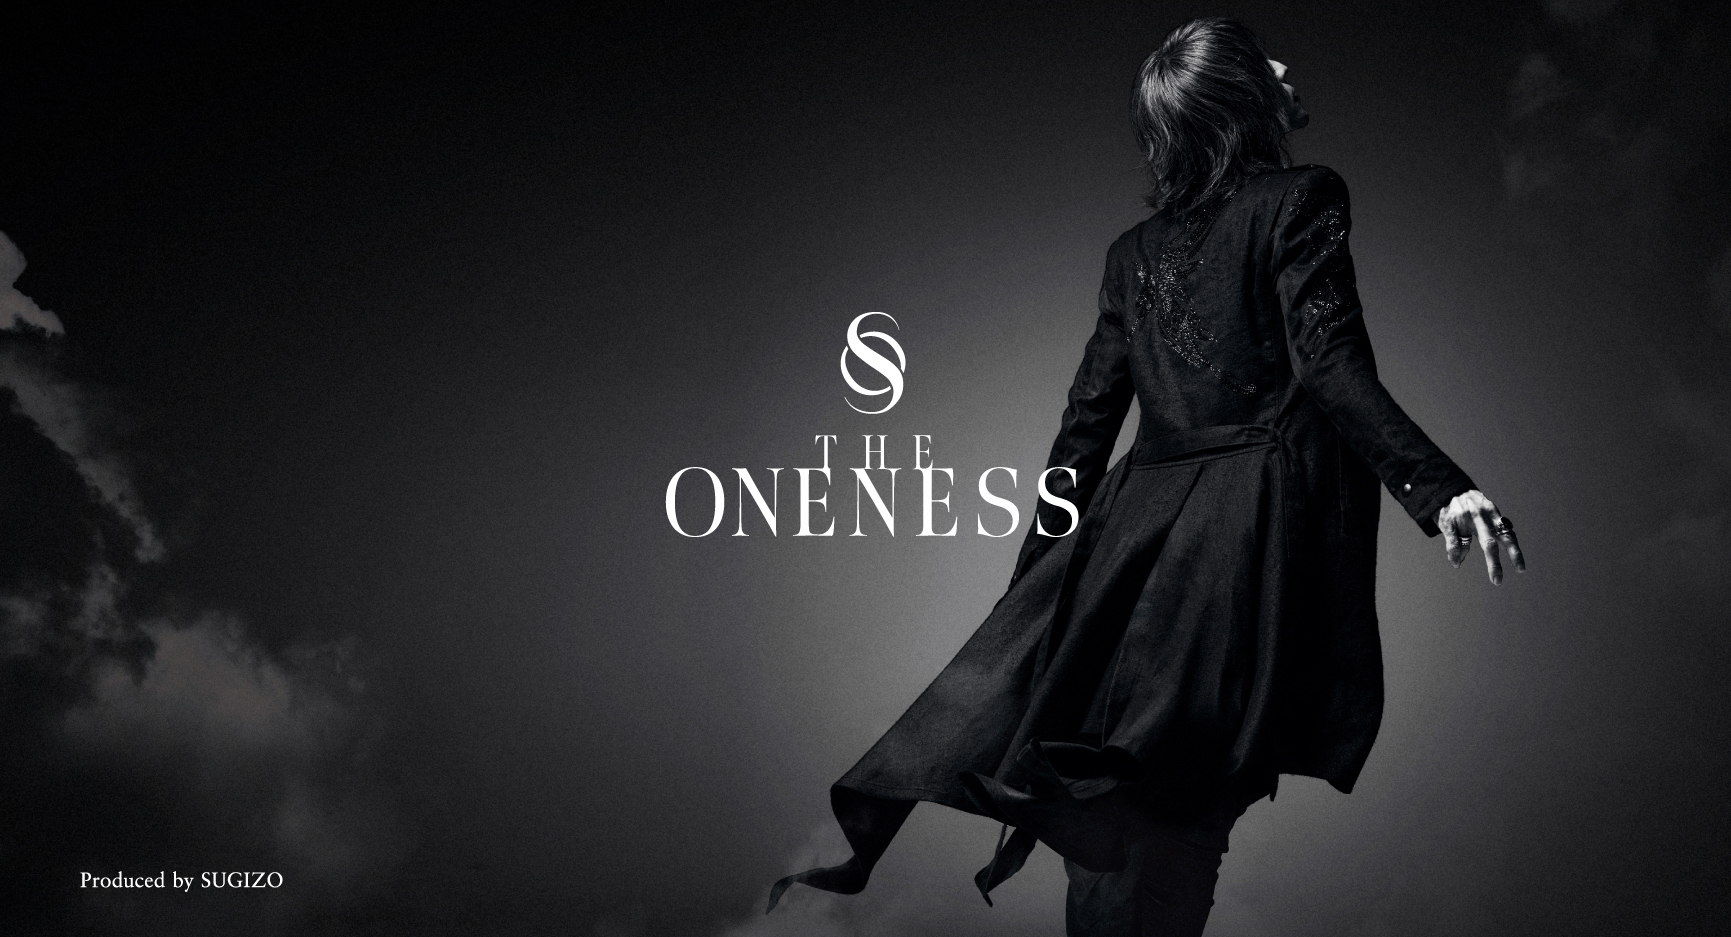 画像 Sugizoのエシカルファッションブランド The Oneness による ウクライナ難民支援チャリティーtシャツ 販売スタート の画像4 4 Spice エンタメ特化型情報メディア スパイス